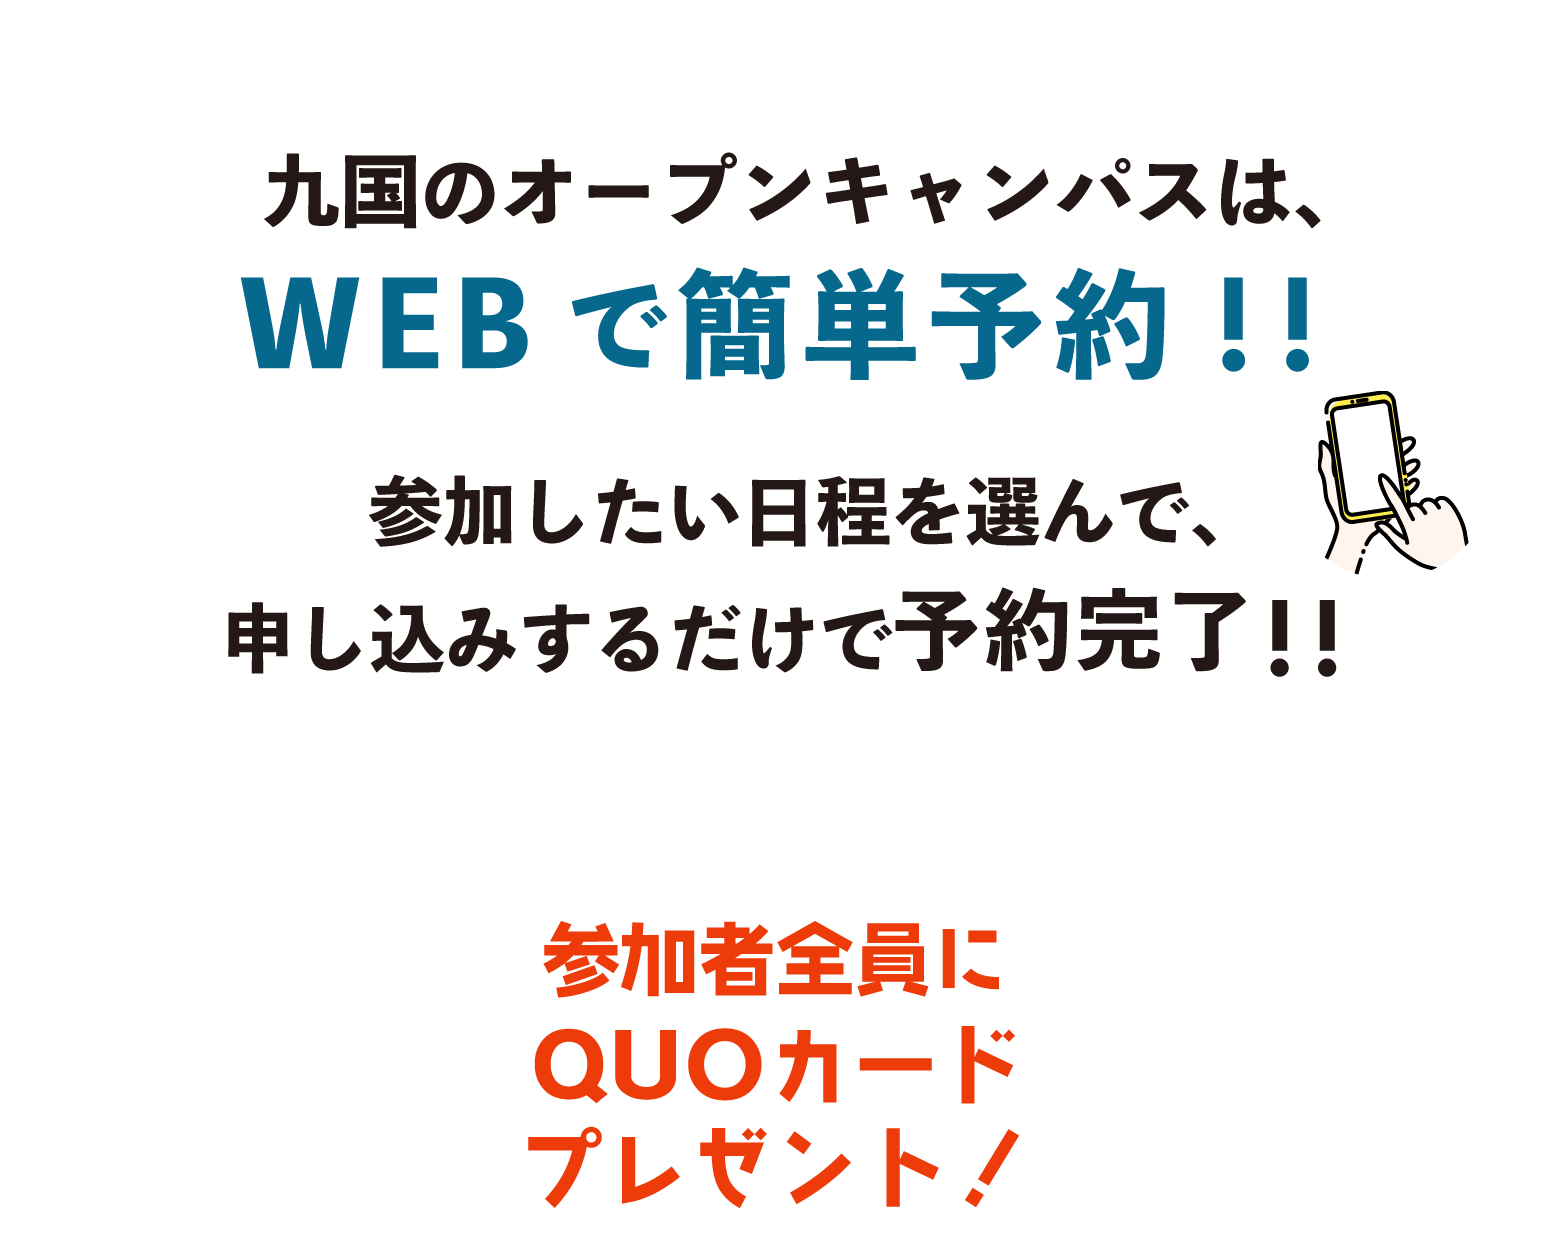 九国のオープンキャンパスはWEBでカンタン予約!!